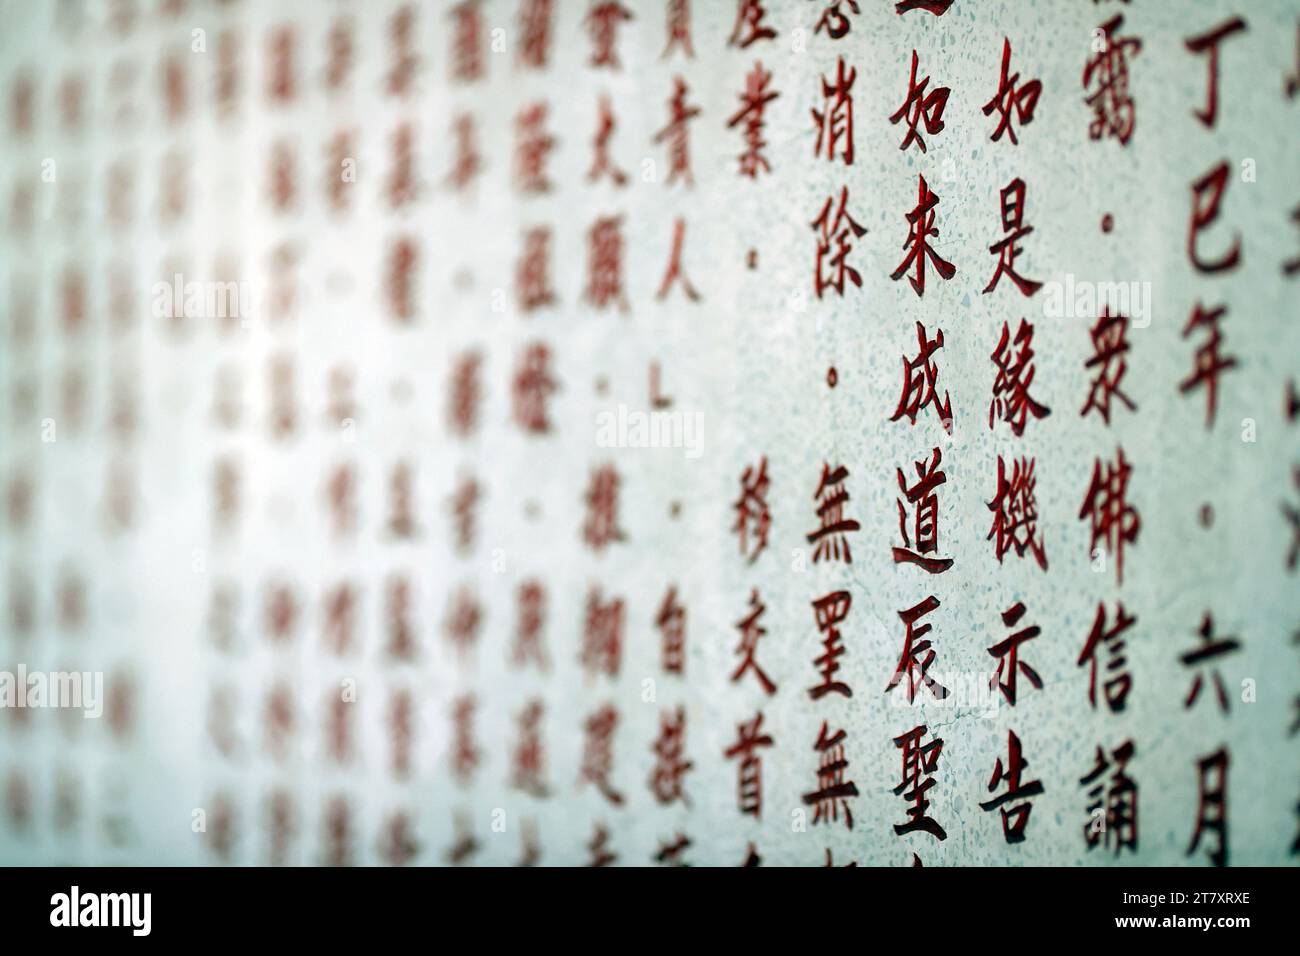 Chinesische Schriftzeichen, buddhistischer Tempel Guan Yin, Vung Tau, Vietnam, Indochina, Südostasien, Asien Stockfoto